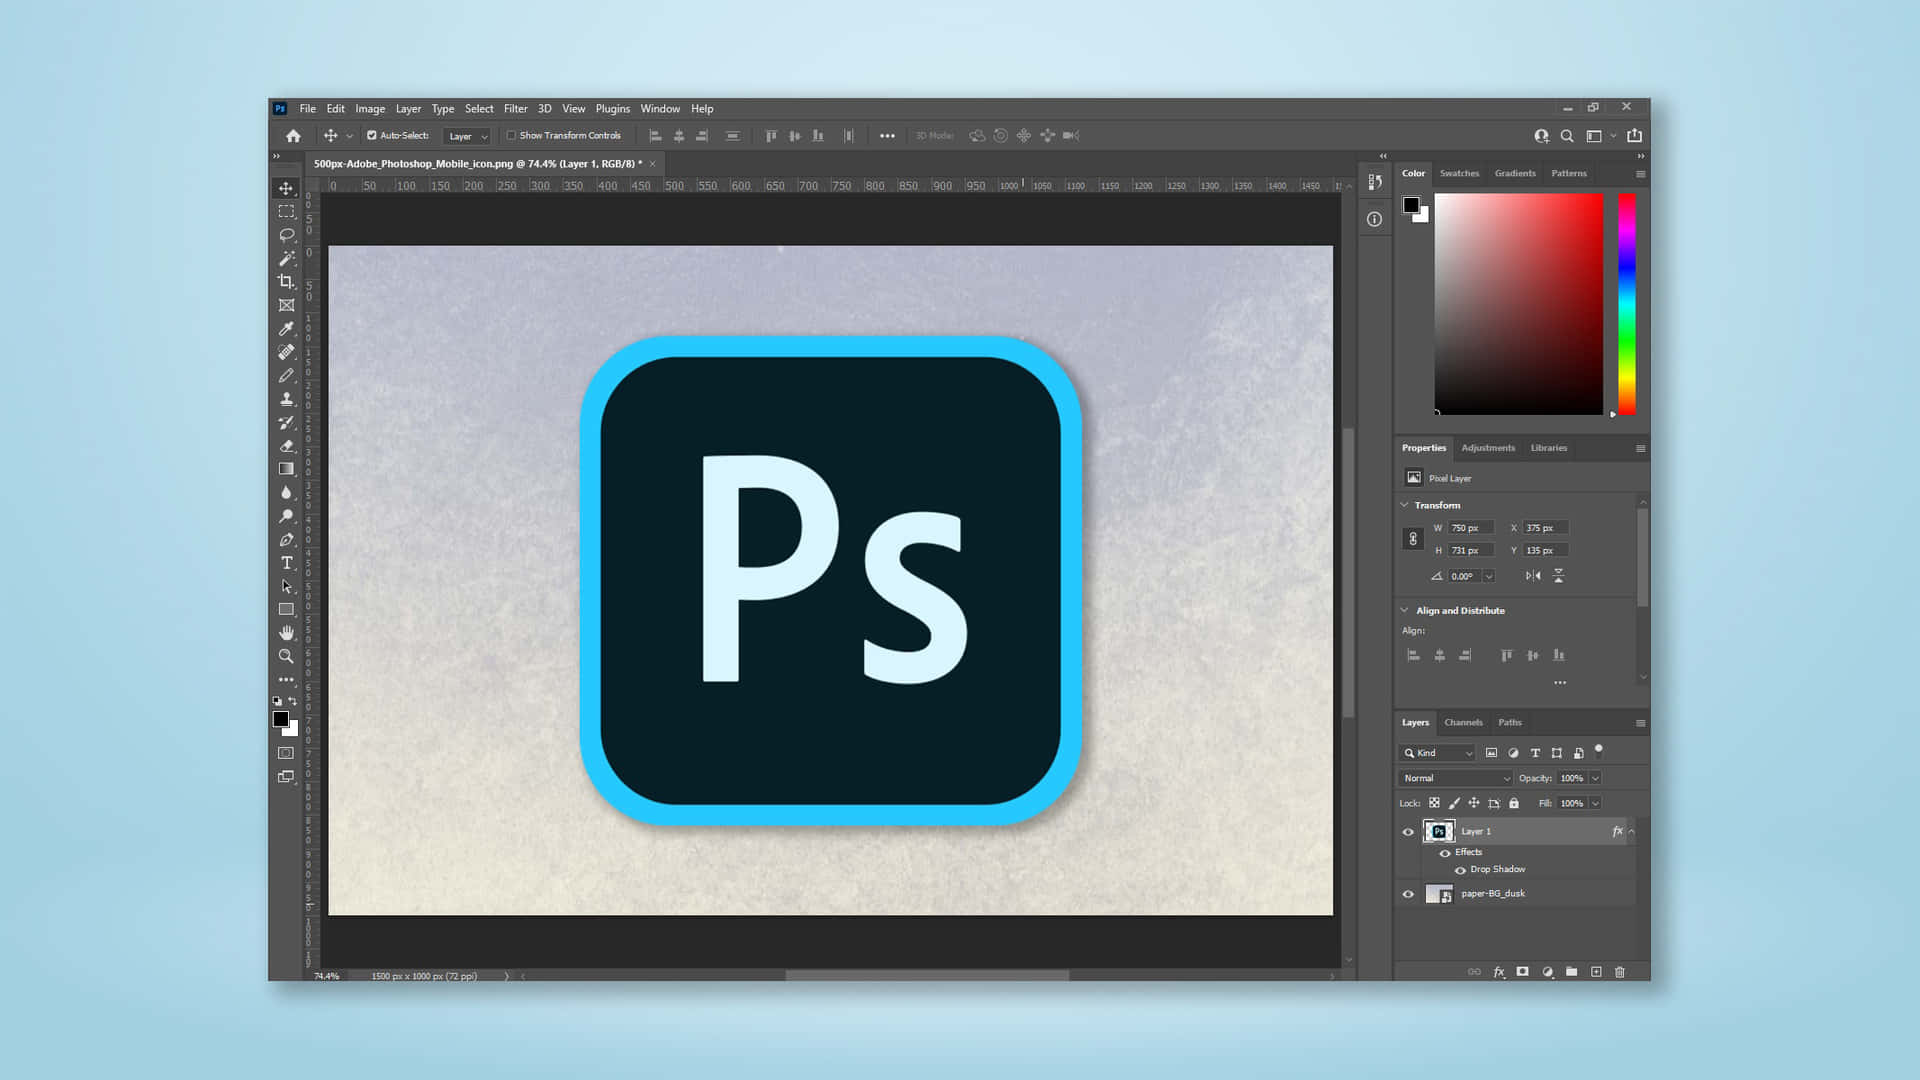 Kanvasför Bakgrund I Adobe Photoshop.